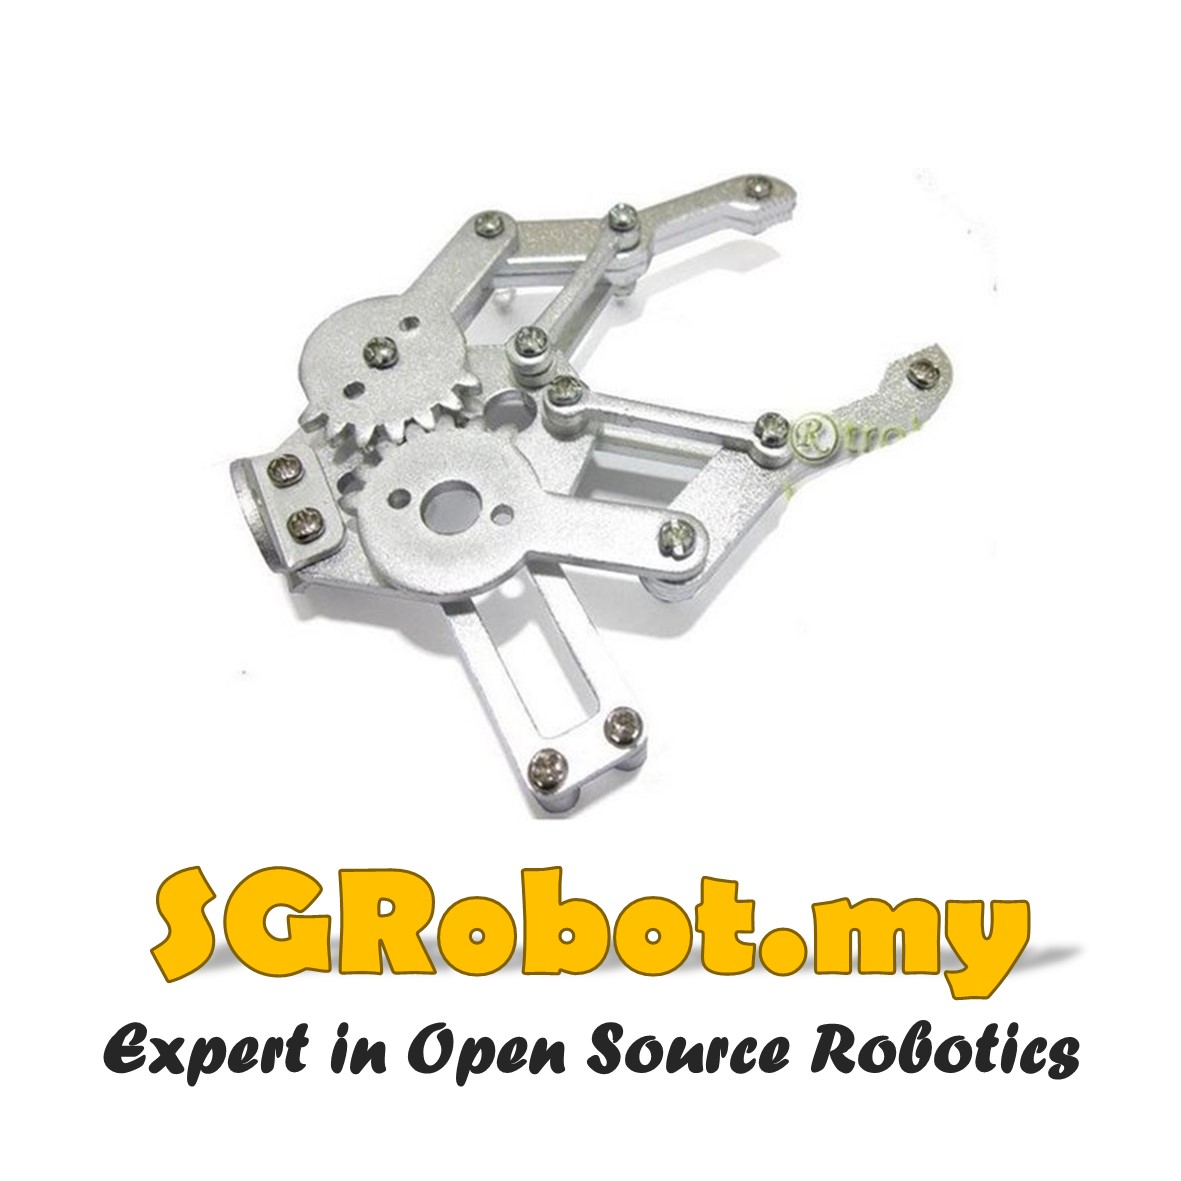 Metal Gripper Robot Arm Manipulator Claw for MG995 SG5010 Servo